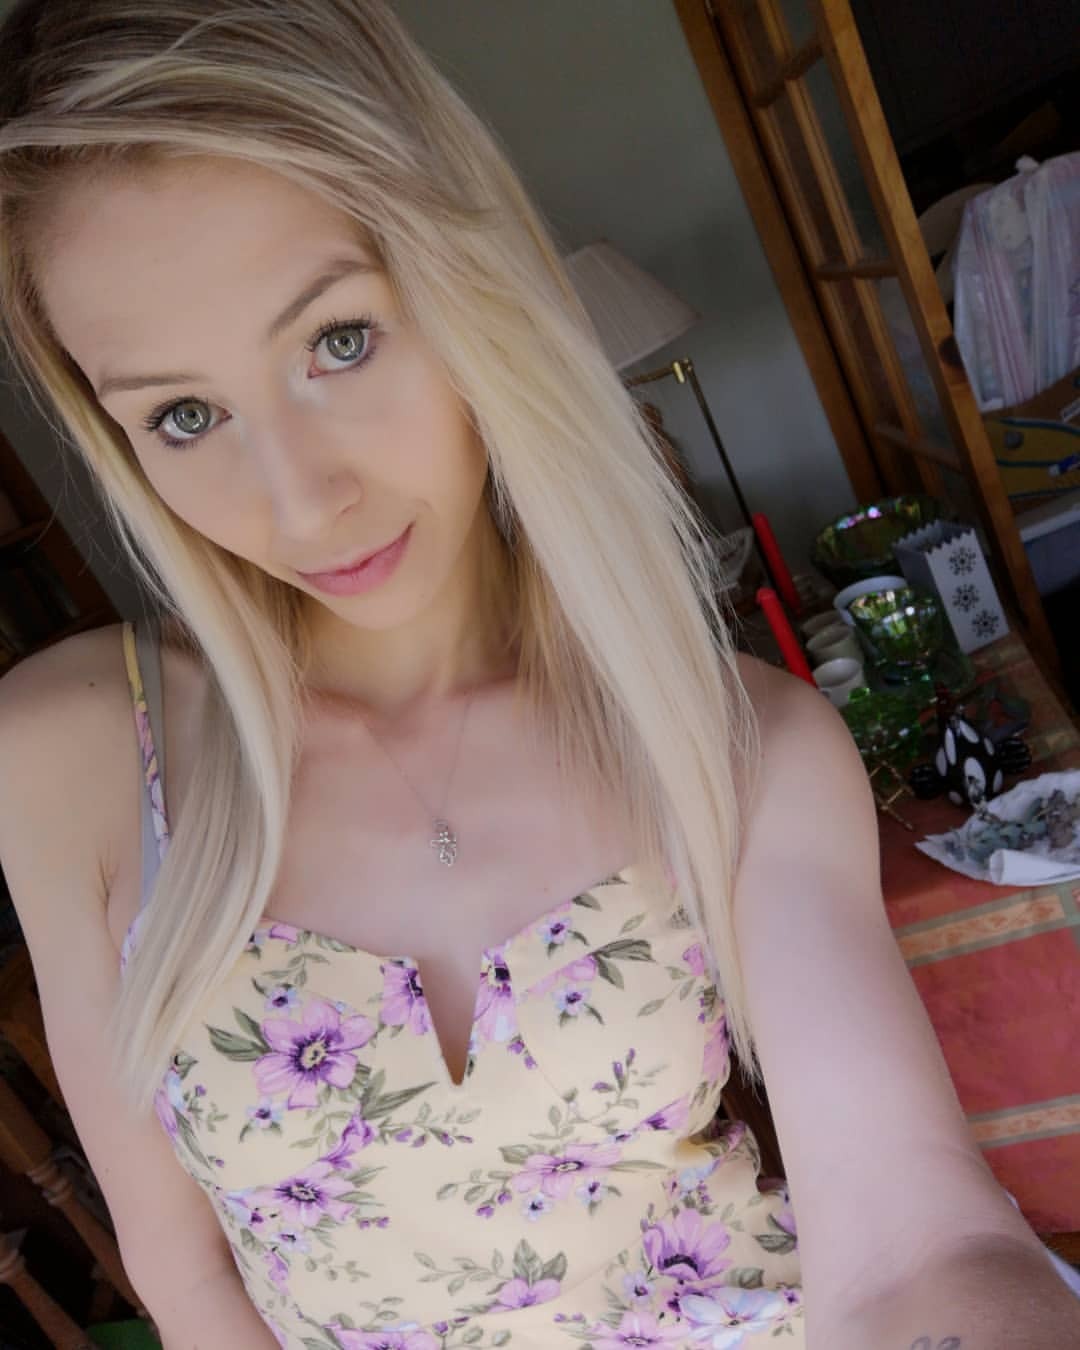 petite blonde teen selfie video gallerie photo